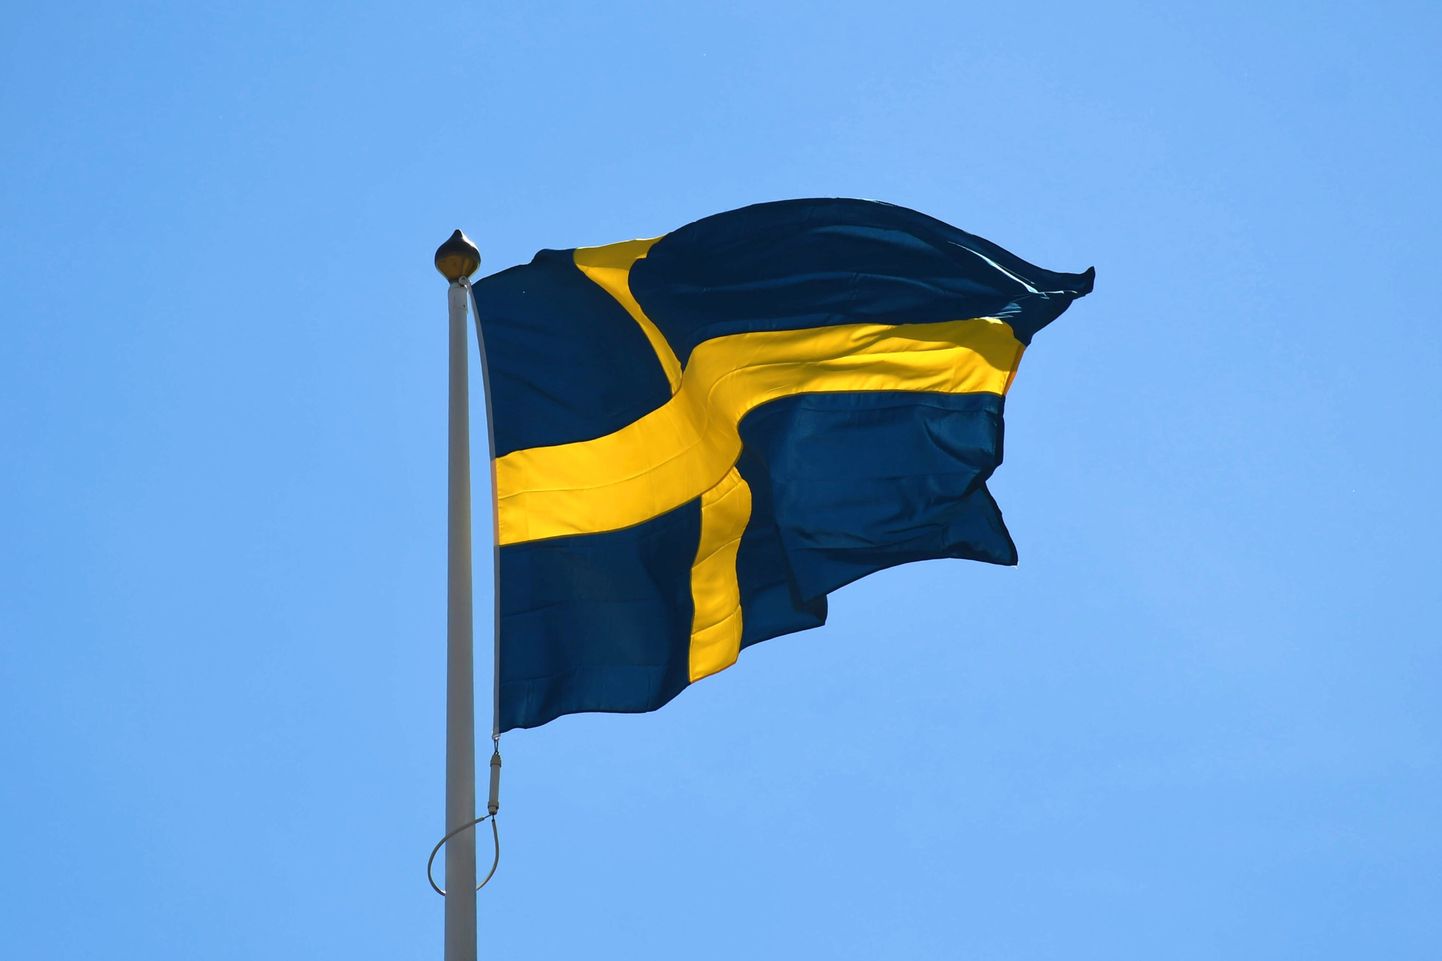 Soome võrguettevõtte juhi sõnul rikuvad rootslased reegleid. Fotol Rootsi lipp.